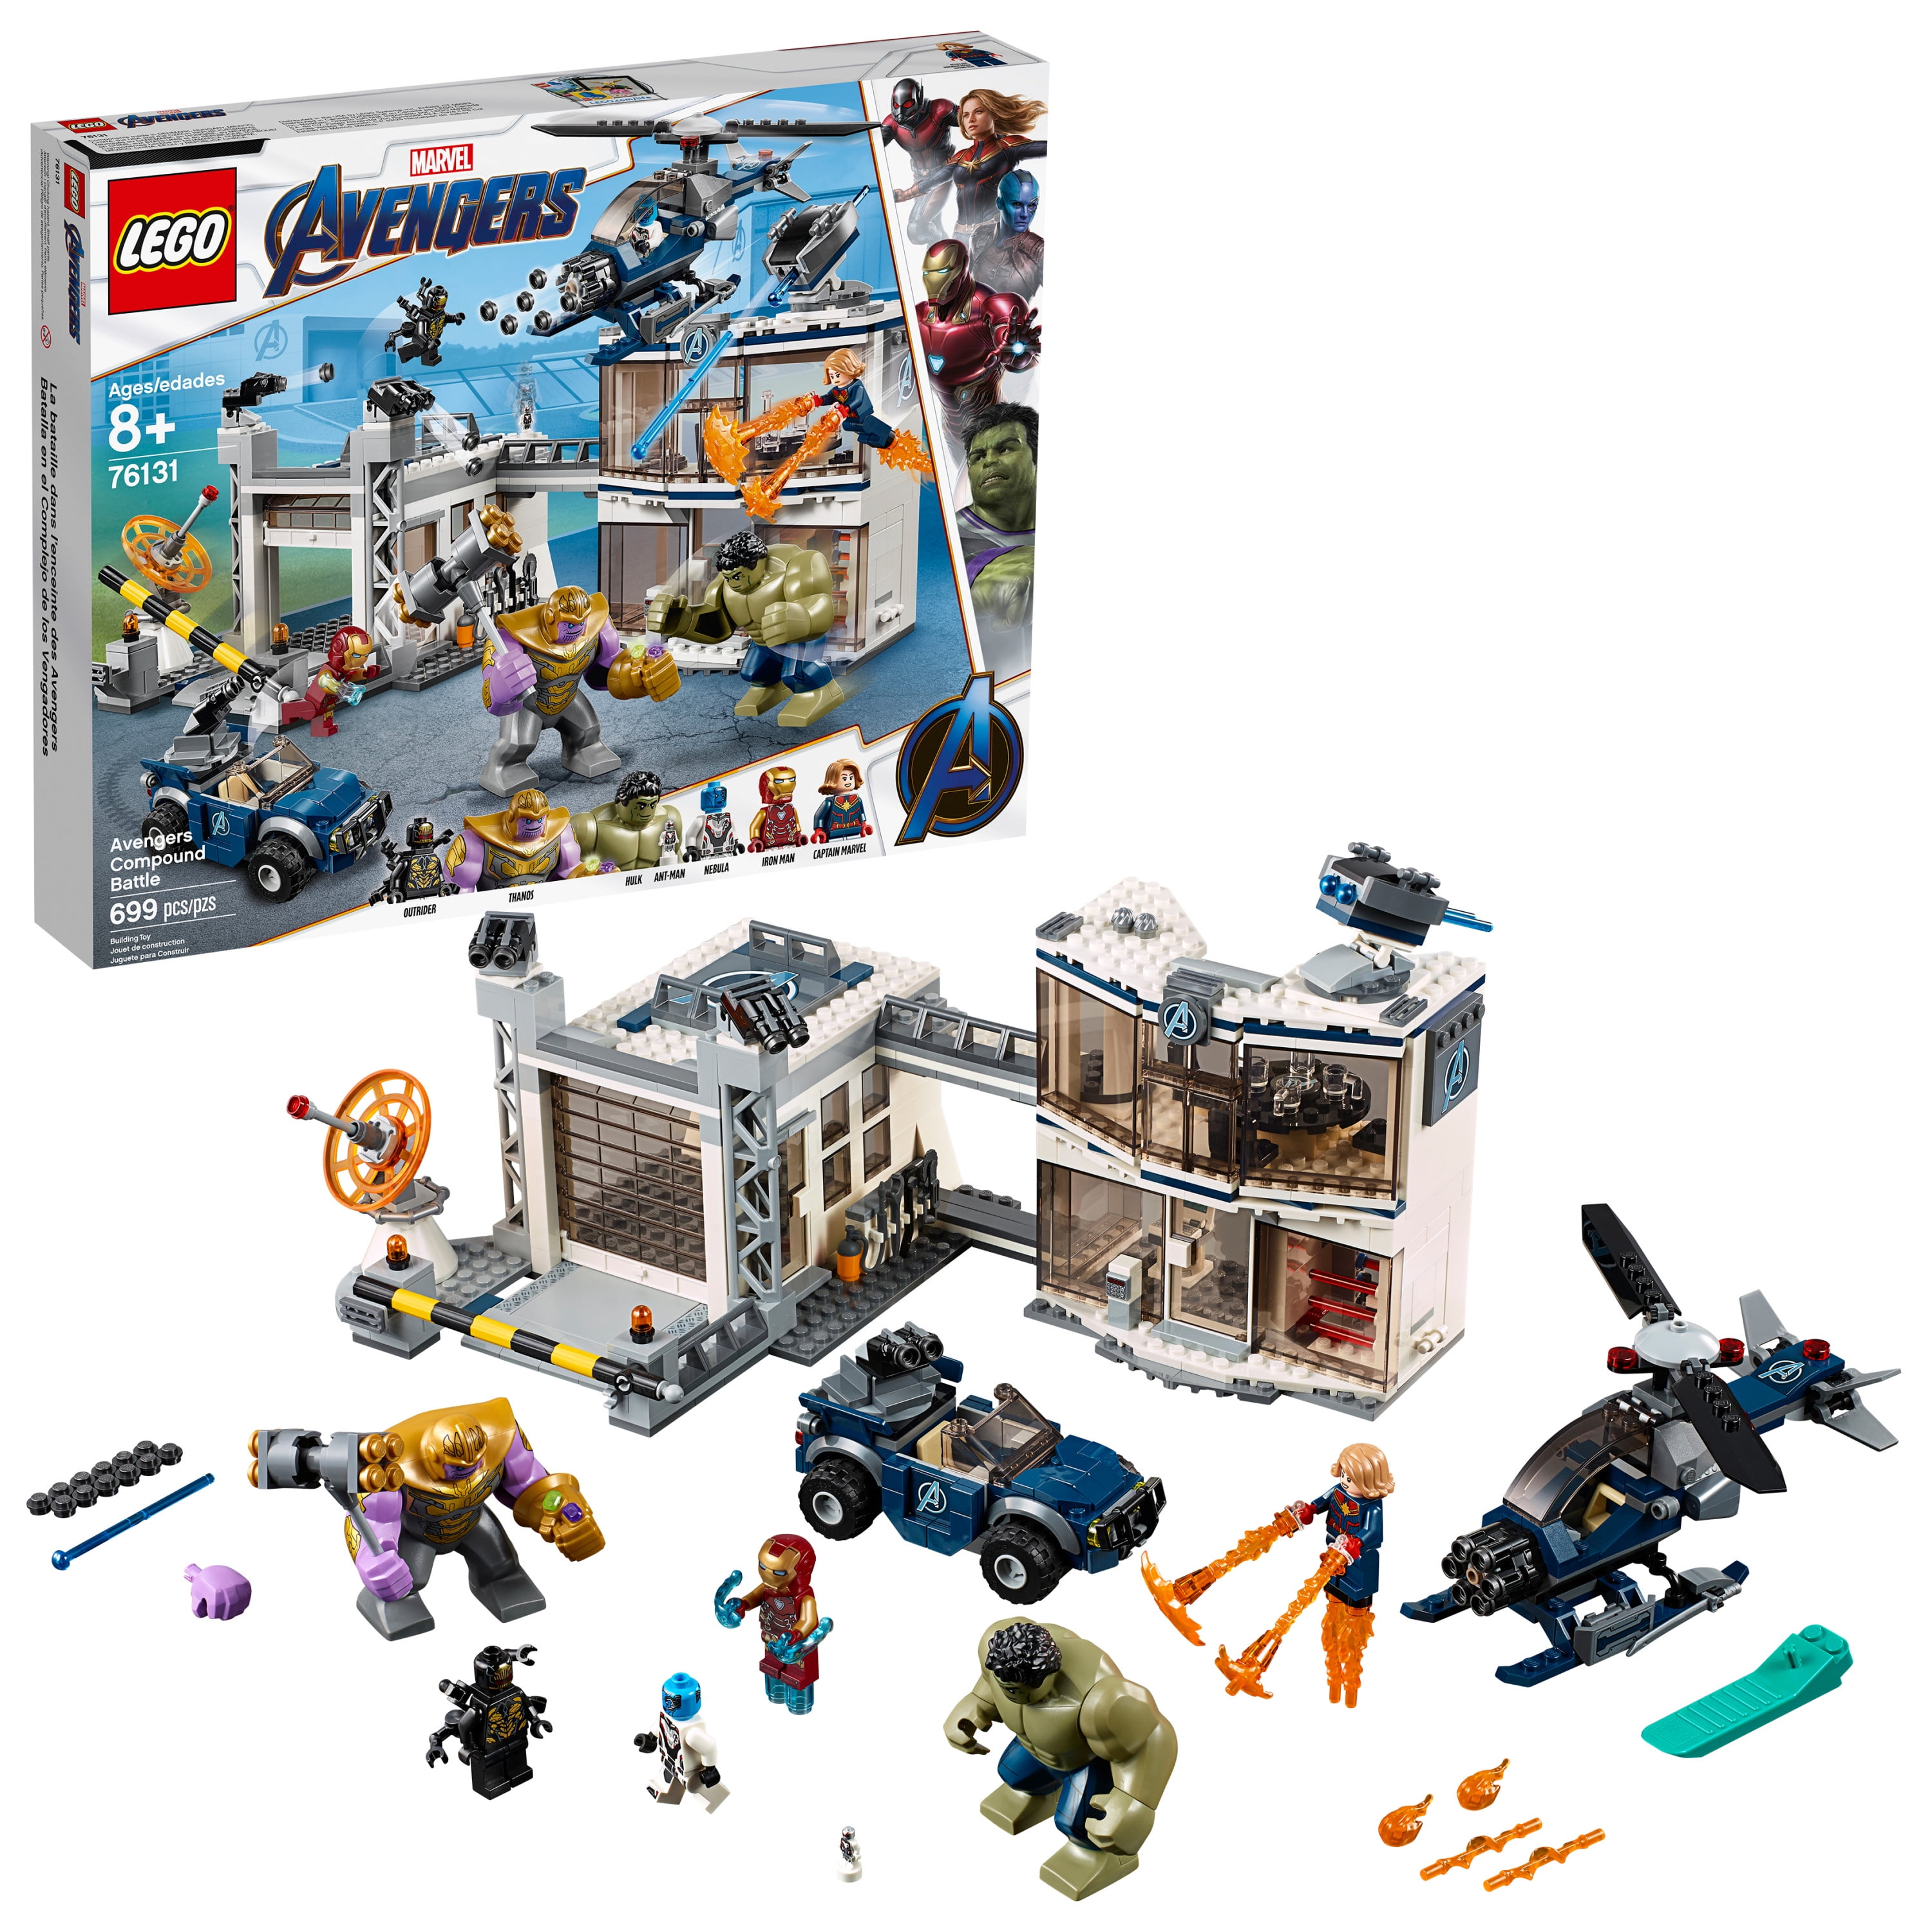 76131 LEGO Marvel avengers Compound BATAILLE 699 pièces 